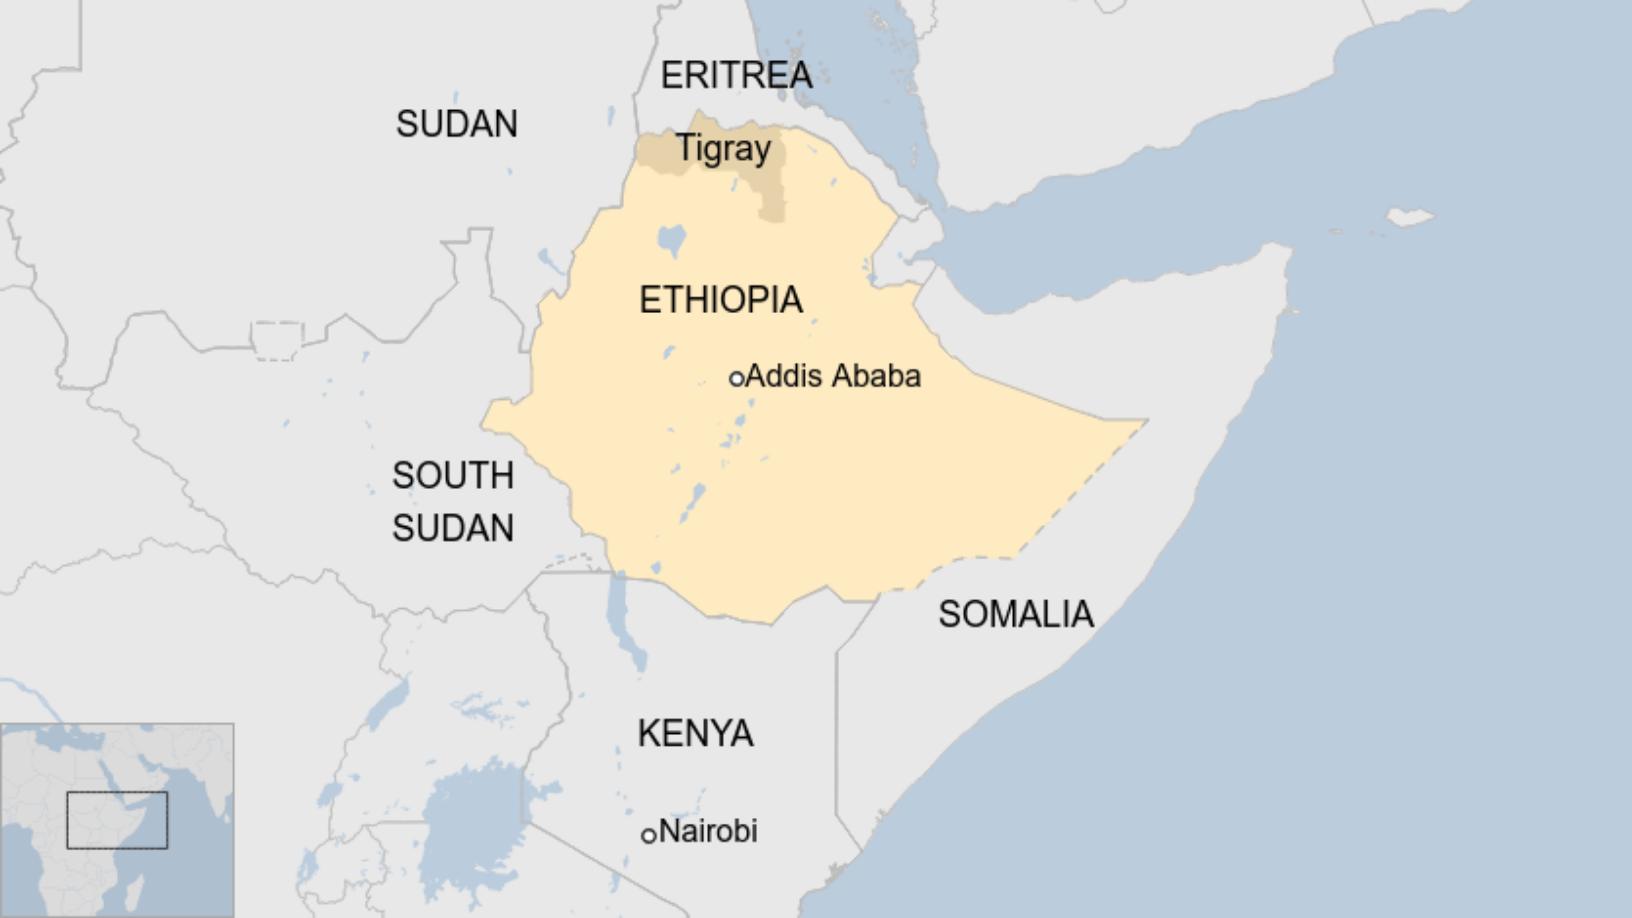 إثيوبيا إطلاق صواريخ من تيغراي تضرب عاصمة إريتريا الإيطالية نيوز